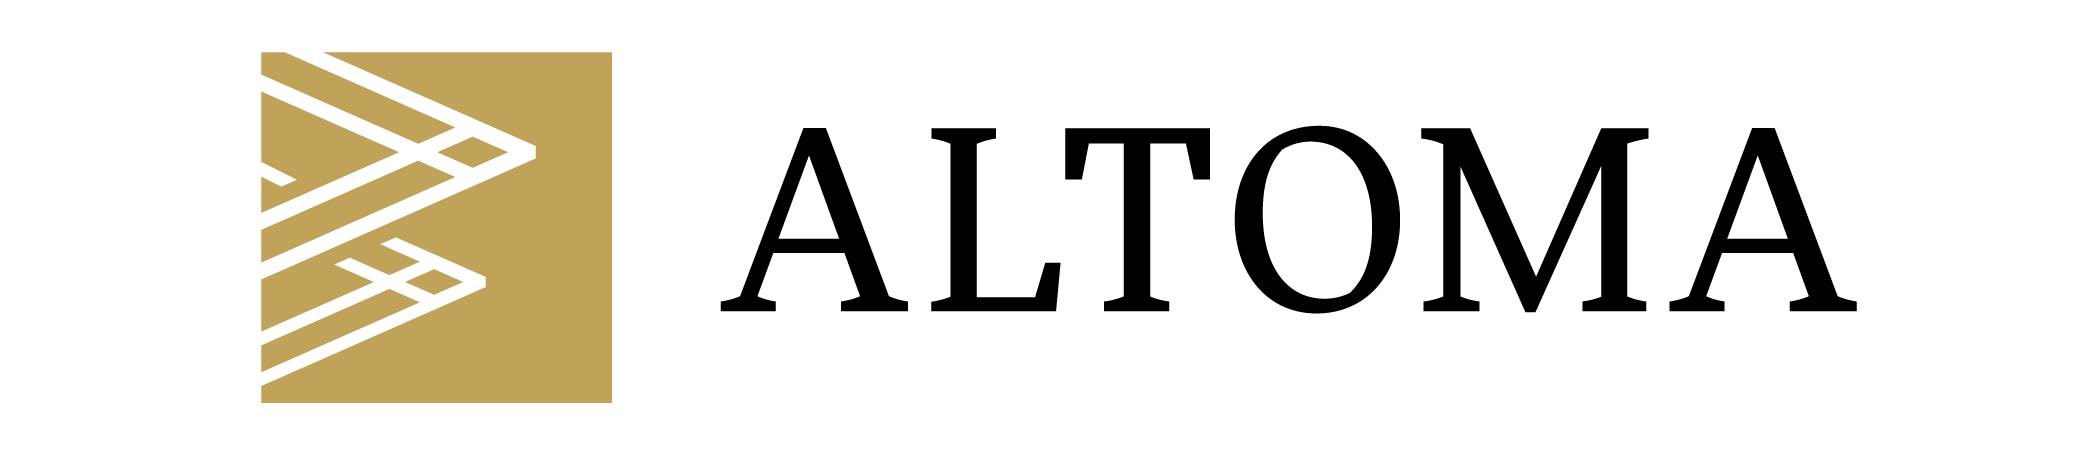 Altoma Announces Closing $92,003,500 via 24 Transactions Over 12 Months